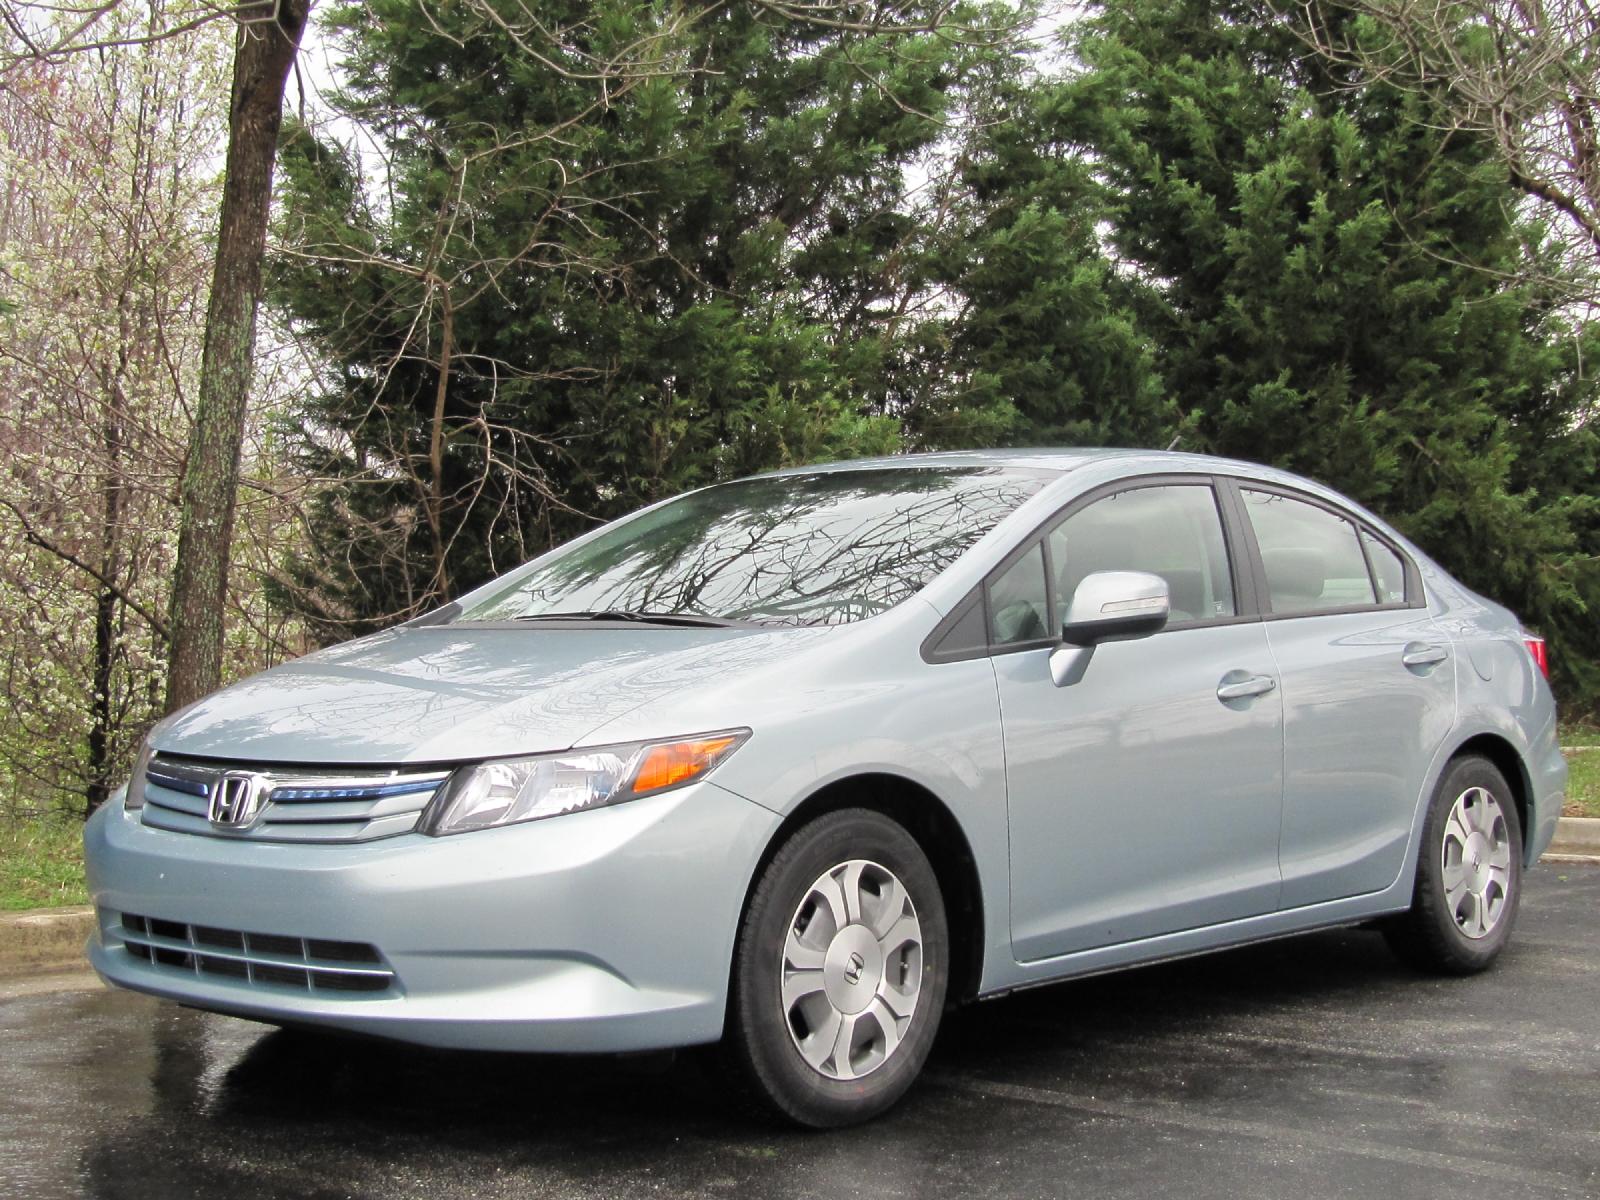  Honda  Civic  Hybrid  Natural Gas Models Eliminated After 2015